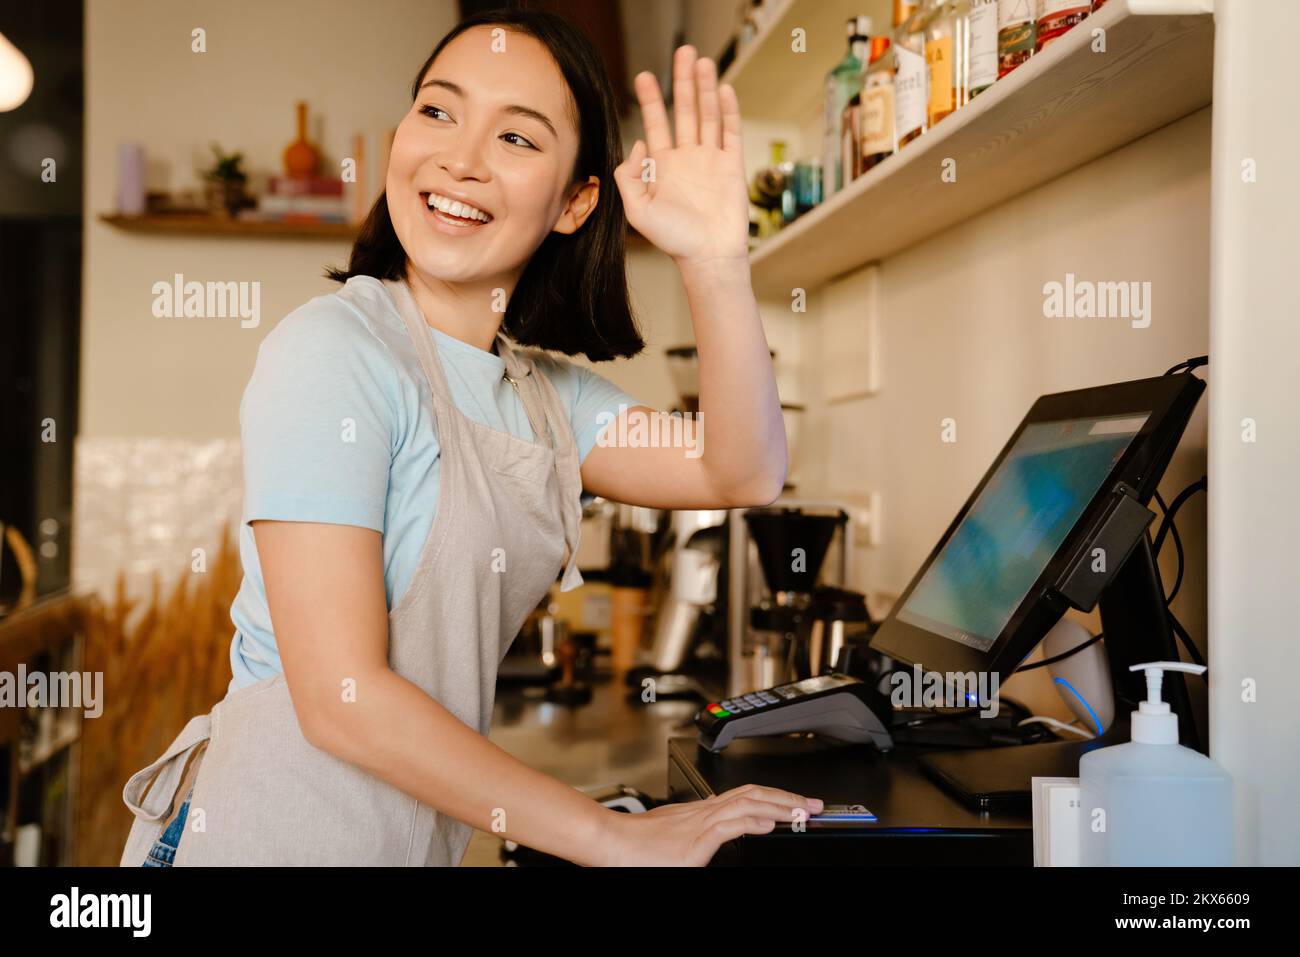 Mujer barista asiática que usa delantal gesturing mientras trabaja con la caja registradora en el café Foto de stock